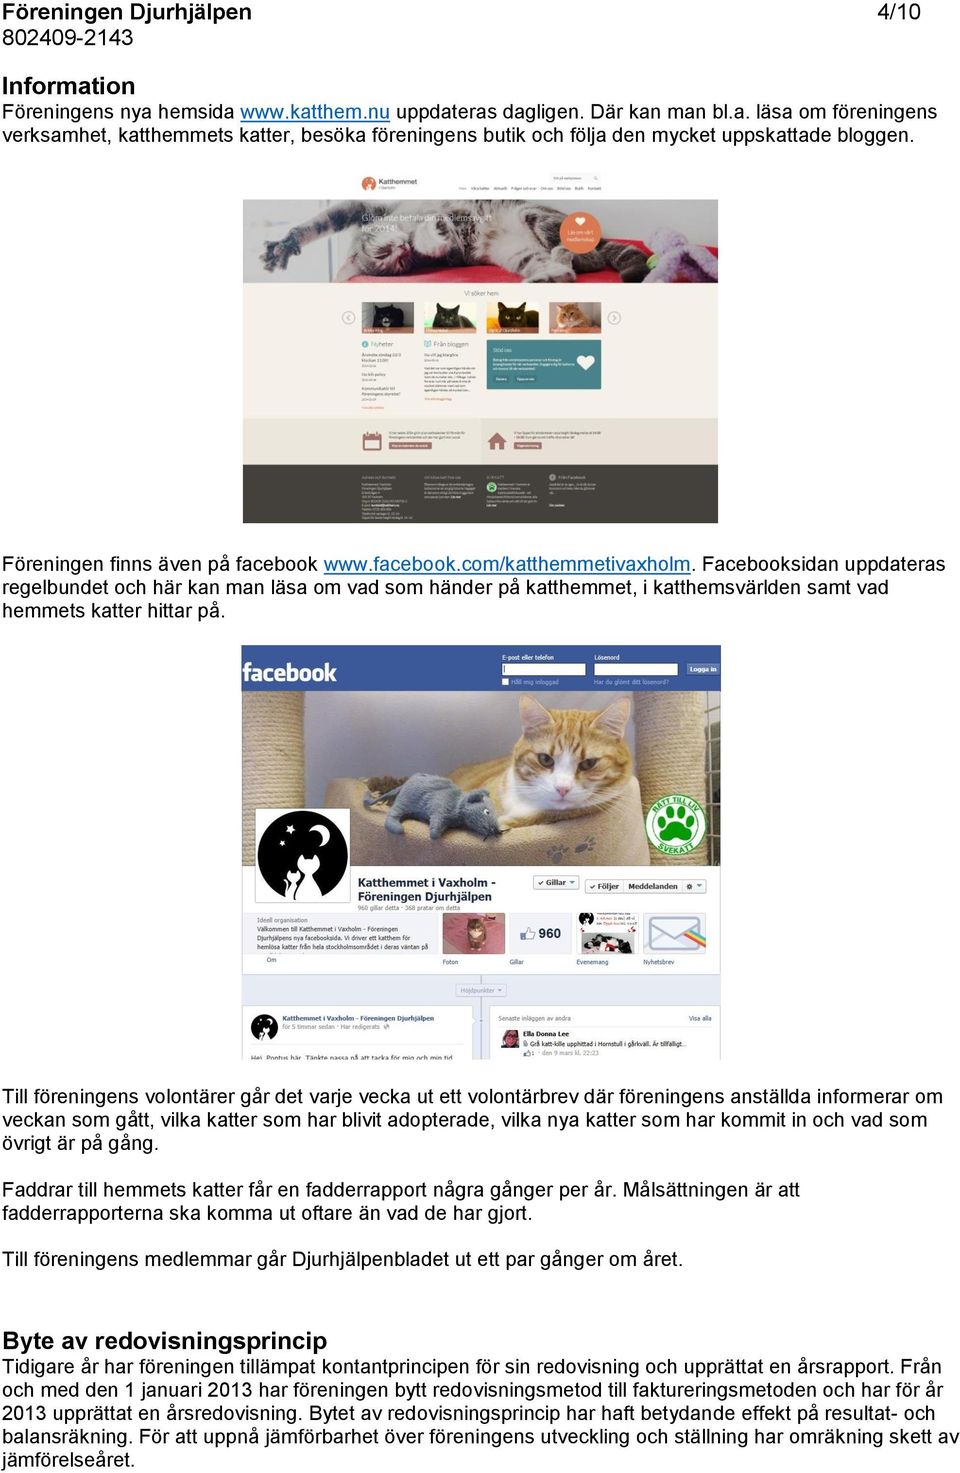 Facebooksidan uppdateras regelbundet och här kan man läsa om vad som händer på katthemmet, i katthemsvärlden samt vad hemmets katter hittar på.